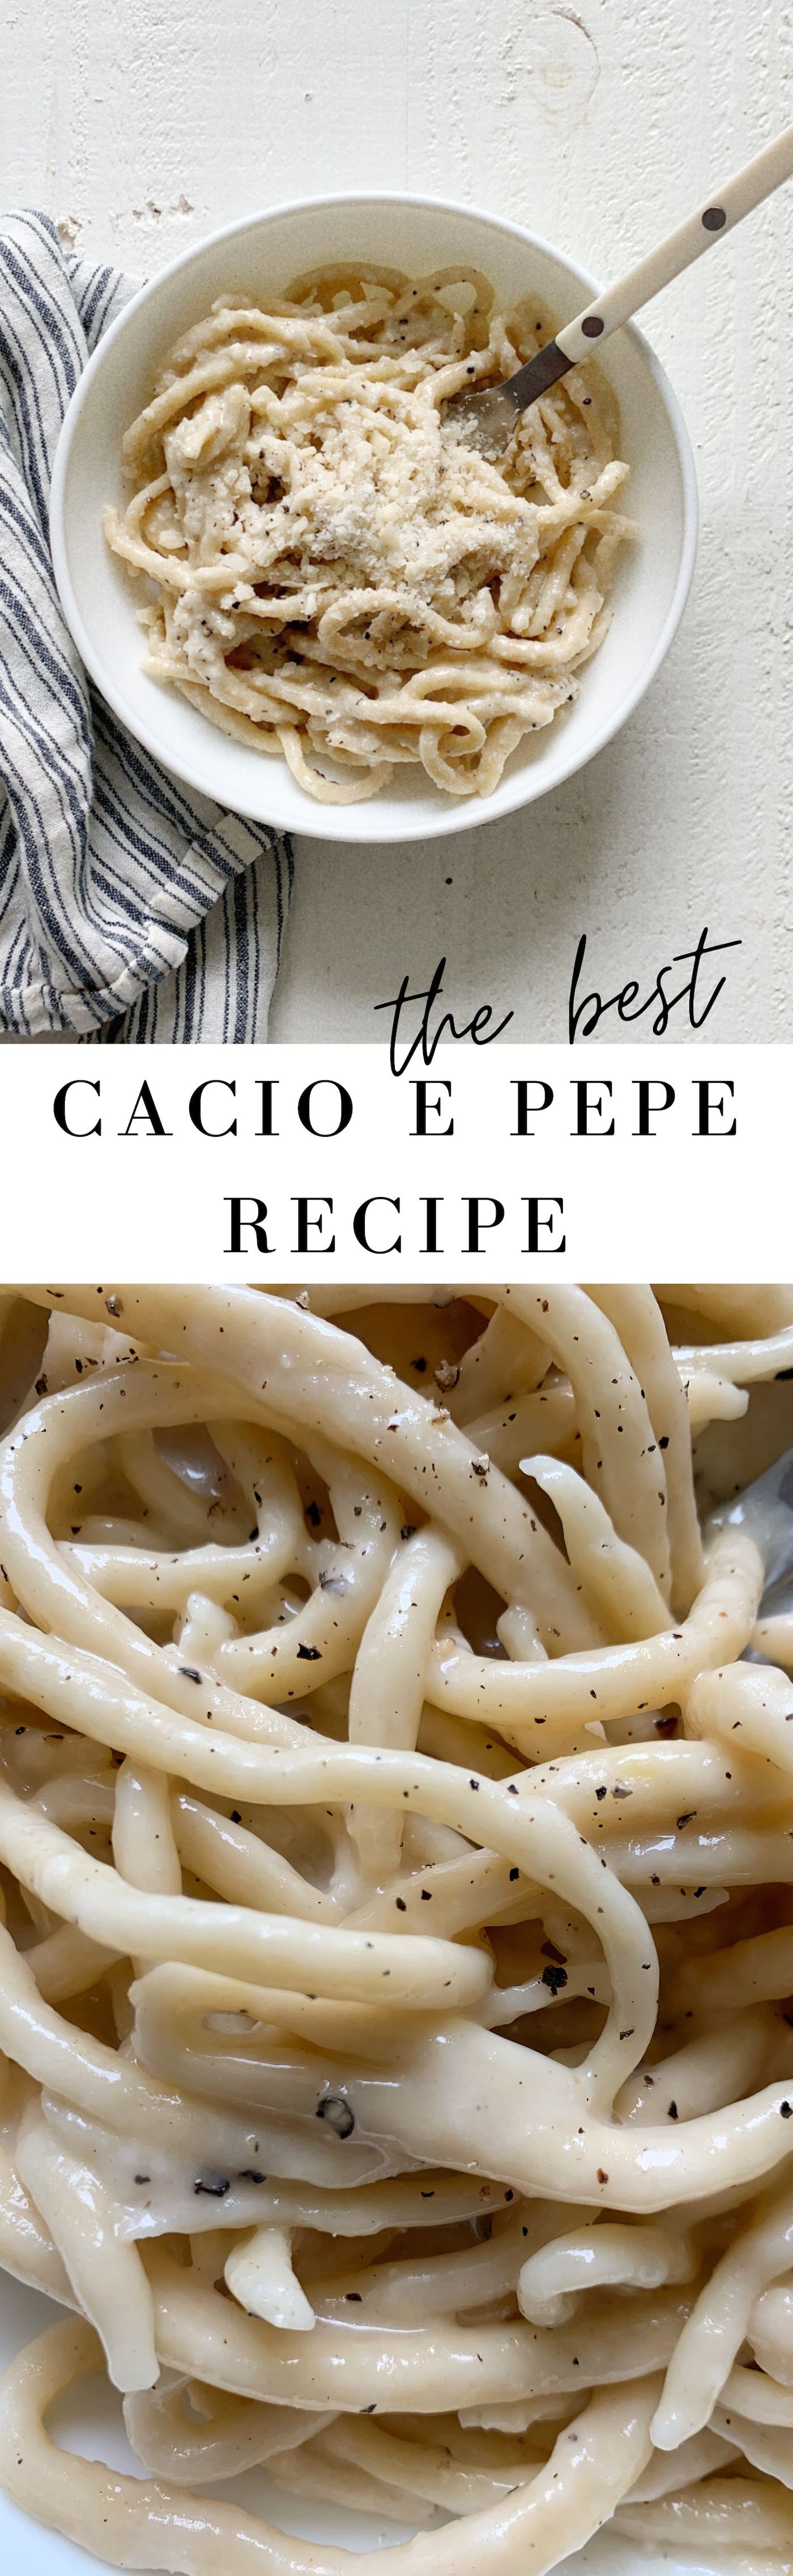 The best Cacio e Pepe recipe